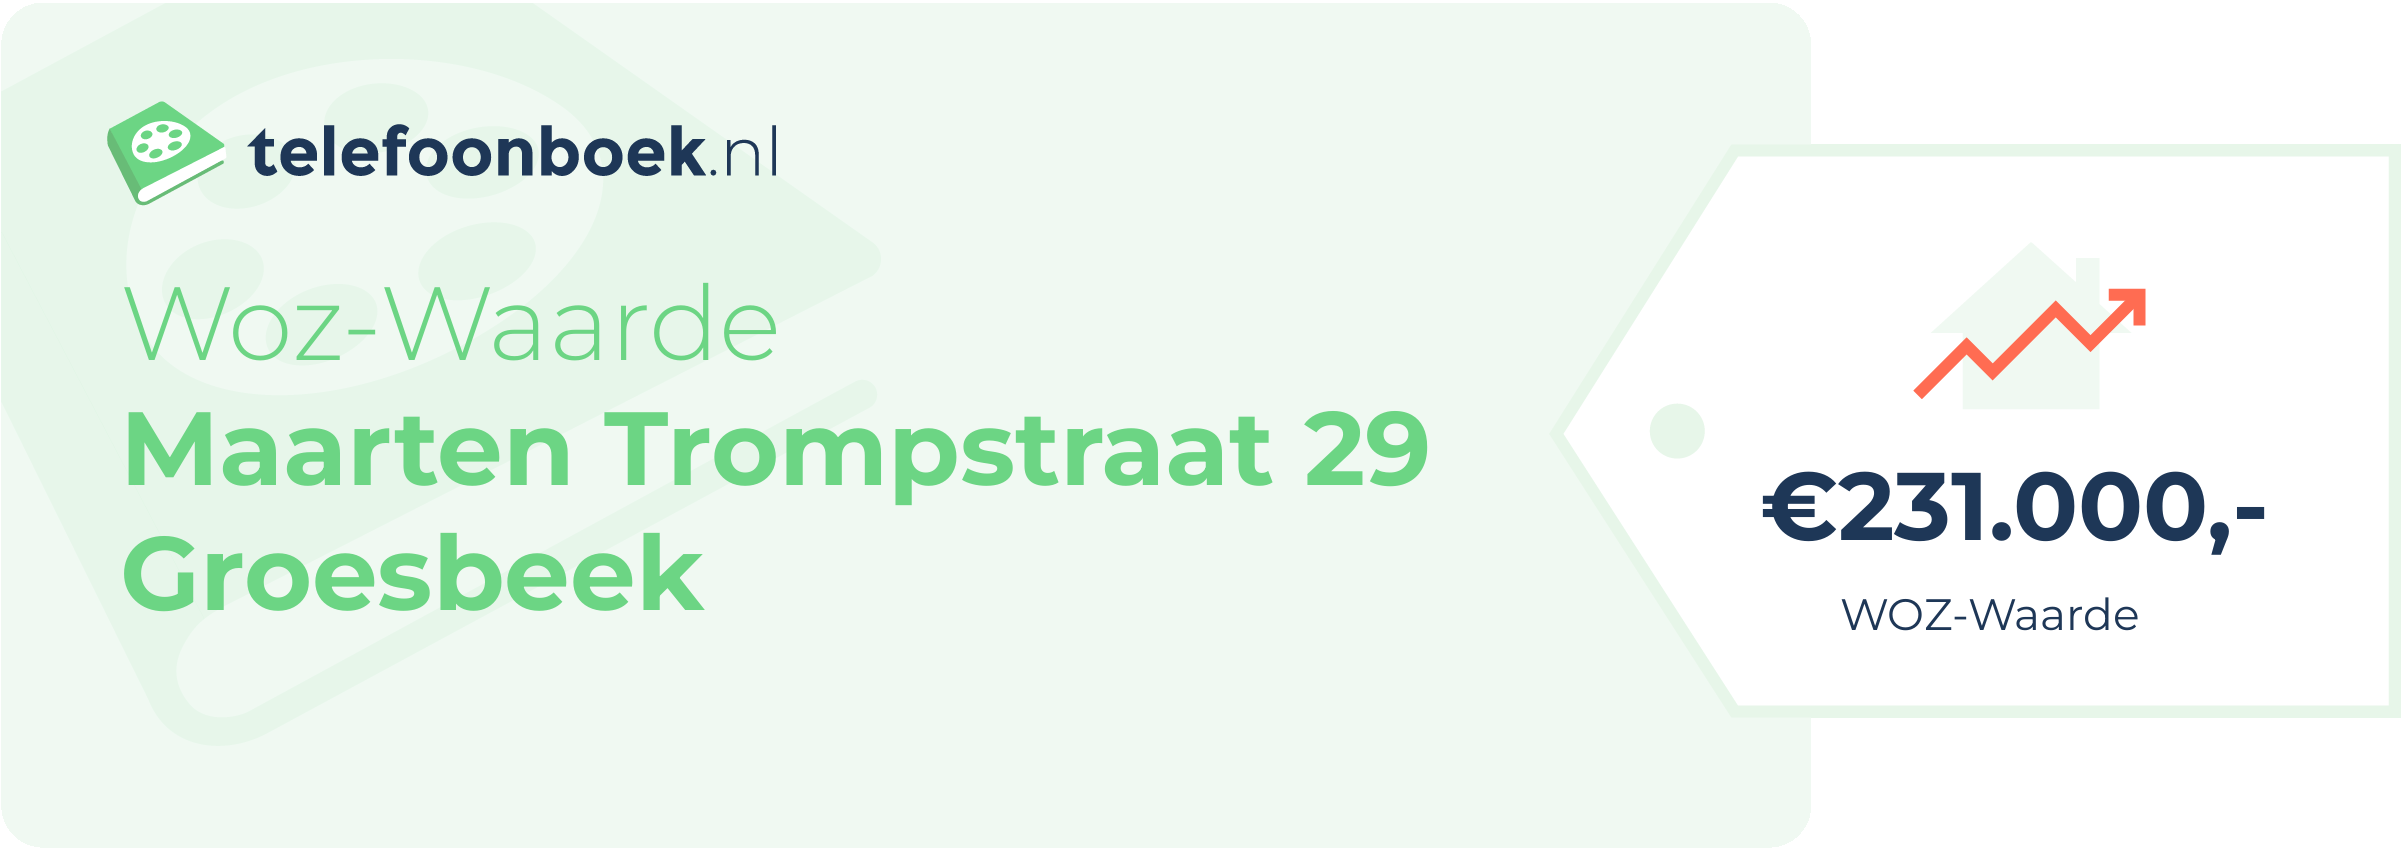 WOZ-waarde Maarten Trompstraat 29 Groesbeek